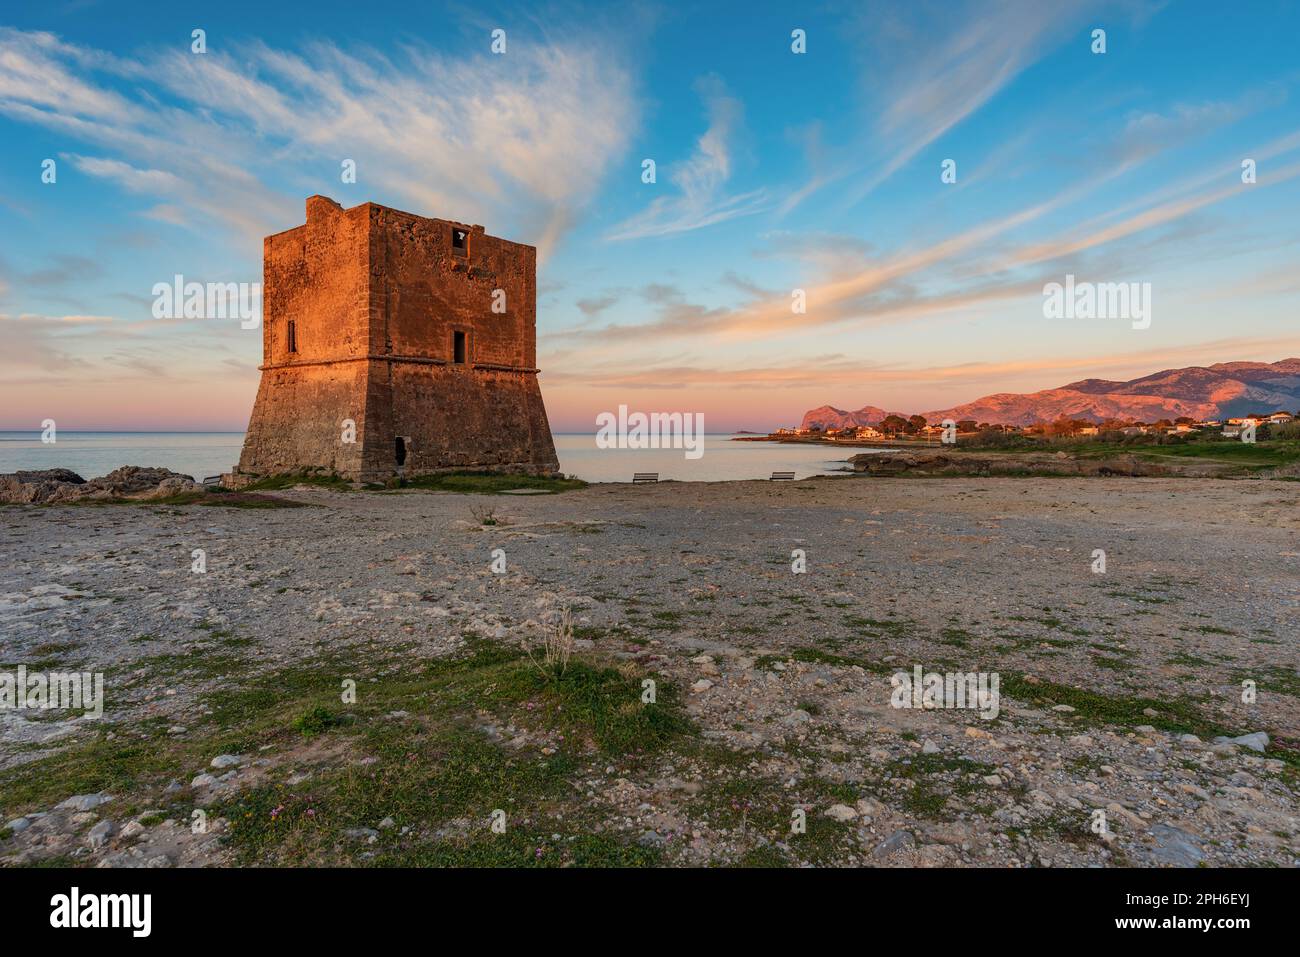 The Saracen tower of Pozzillo at dusk, Sicily Stock Photo